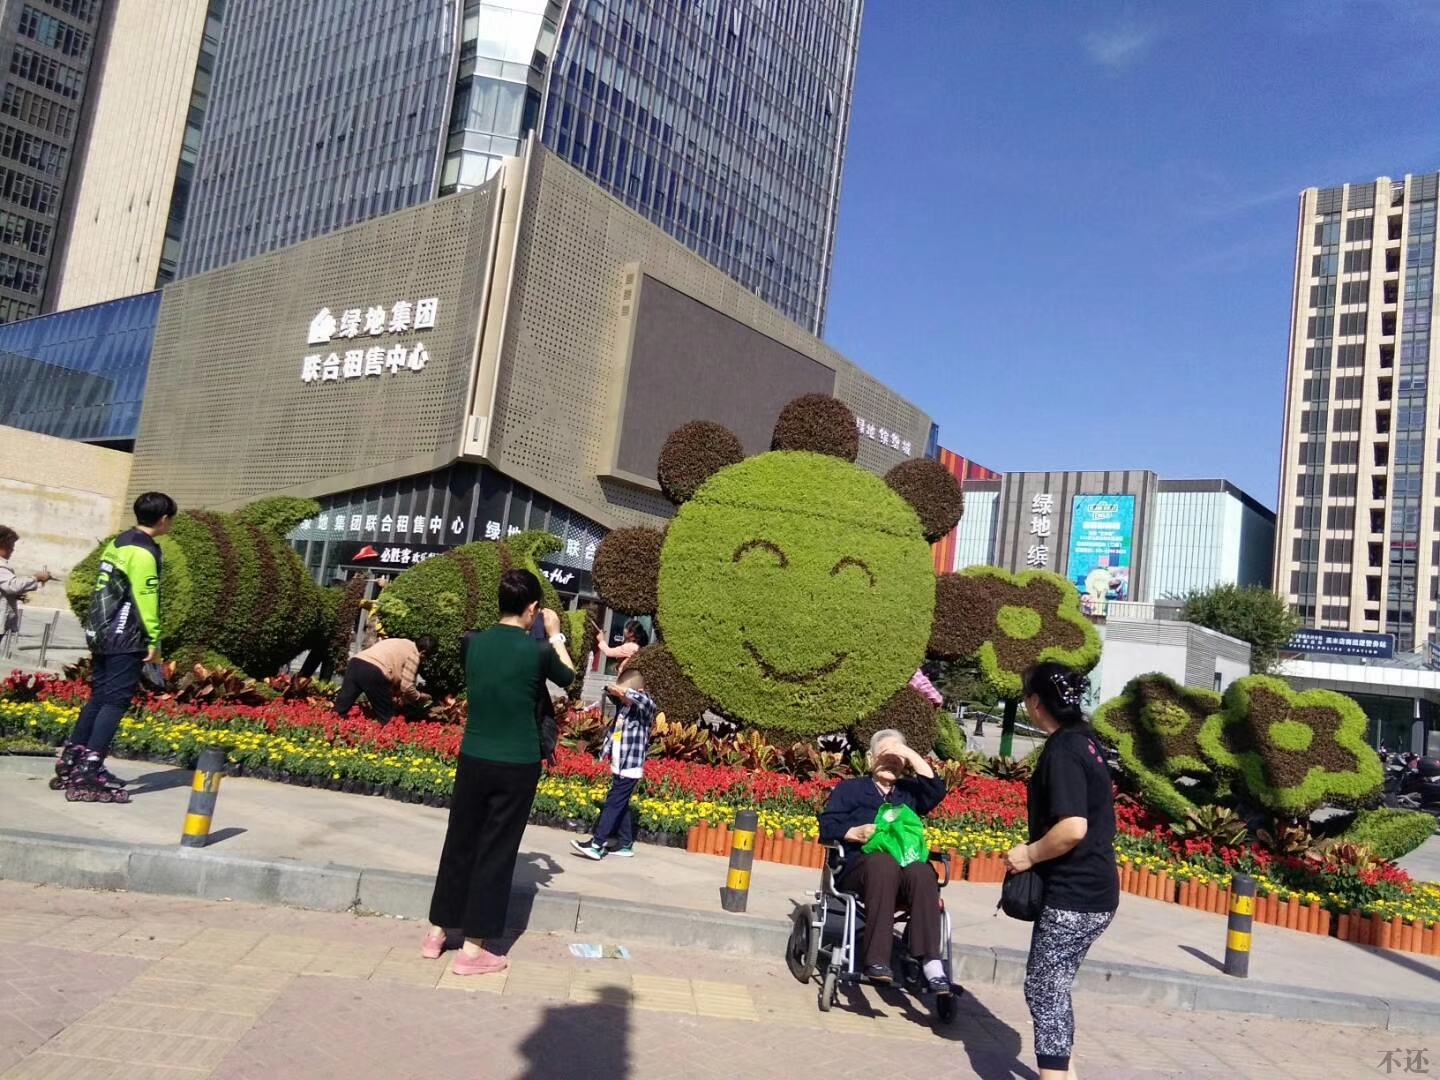 丽江立体花坛营造节日氛围 着力提升景观效果